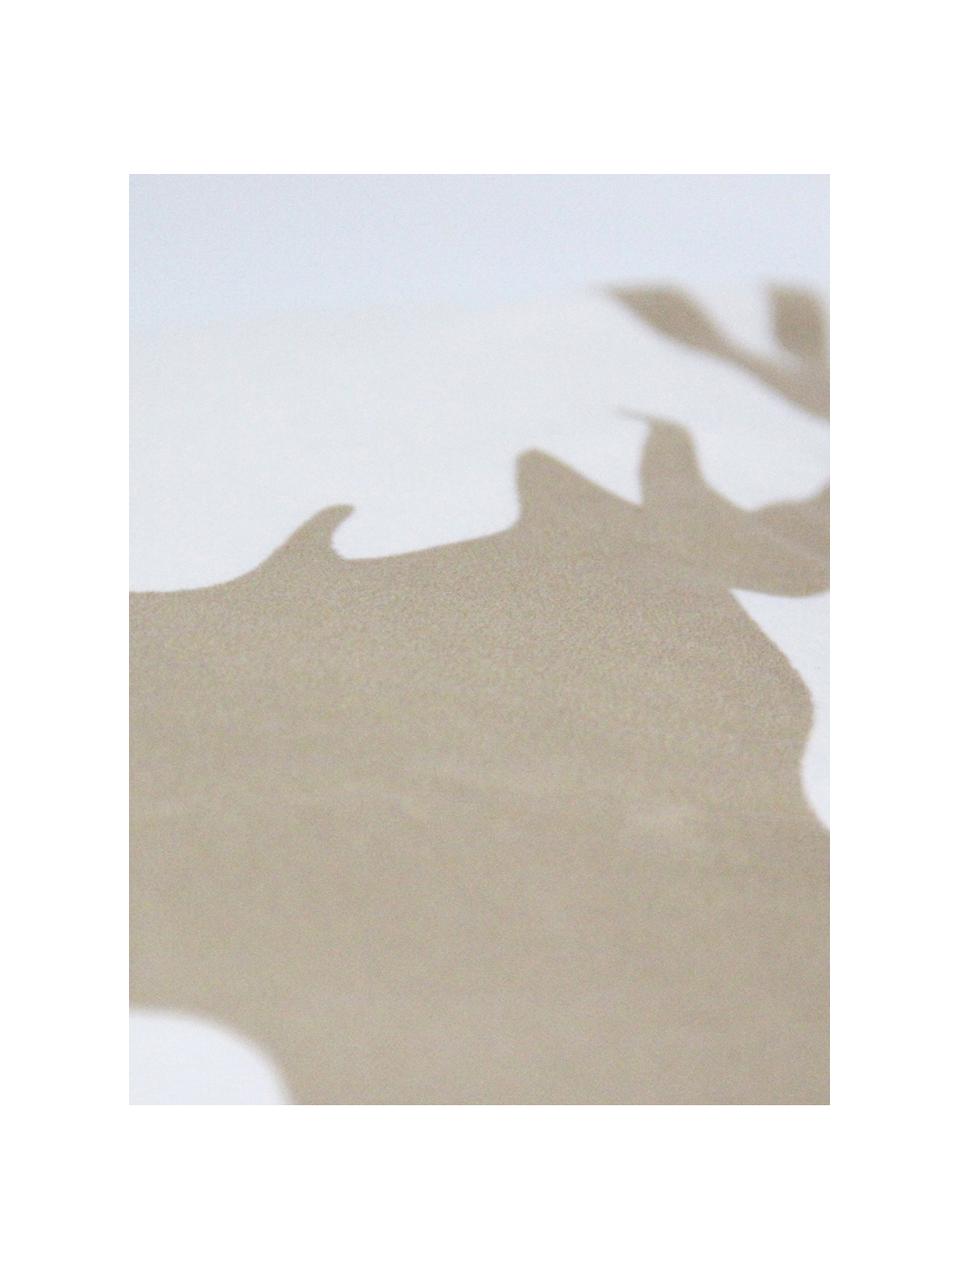 Fluwelen kussenhoes Reindeer, Polyester fluweel, Wit, bruin, 45 x 45 cm